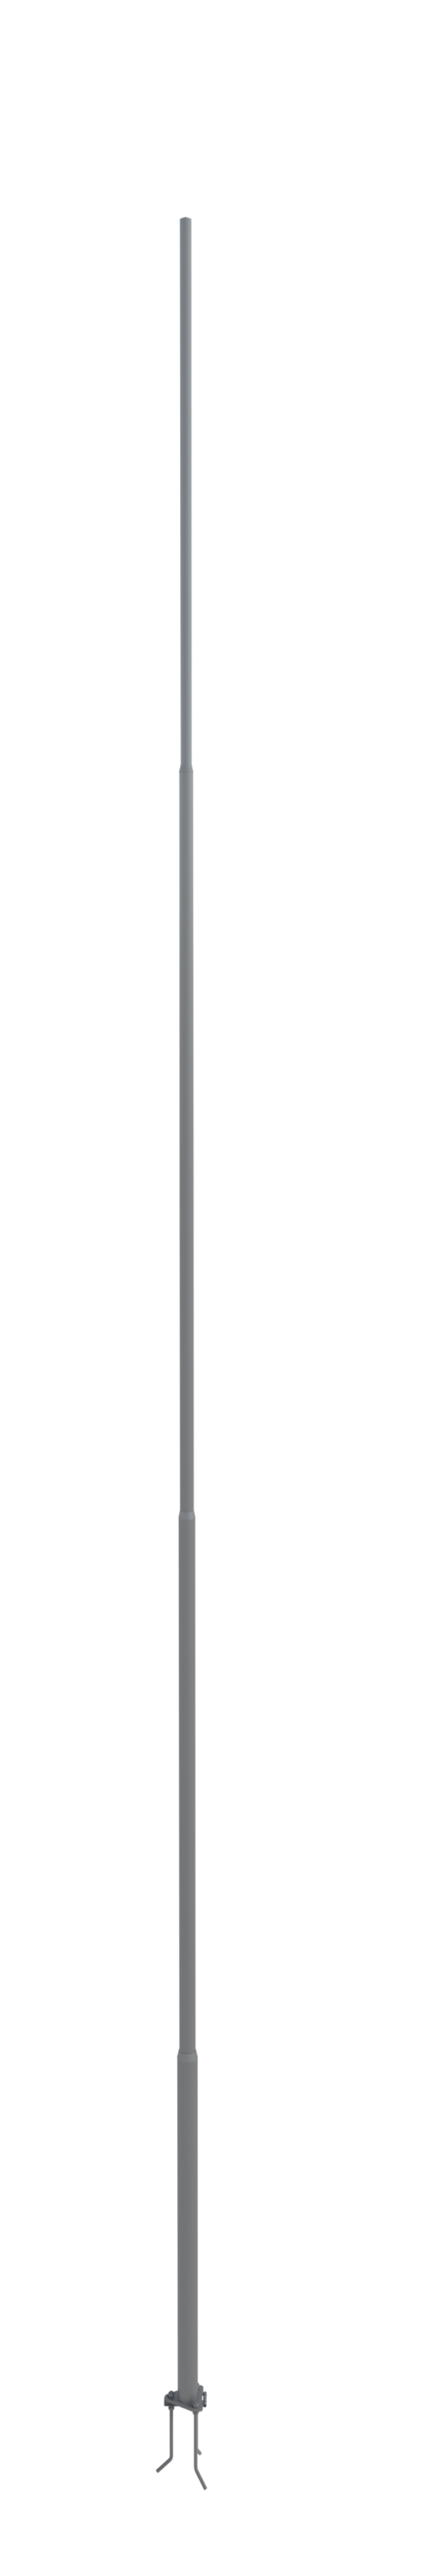 NordWerk МСАА-8 — Молниеприемник высотой 8 метров для активных молниеприемников (алюминий)